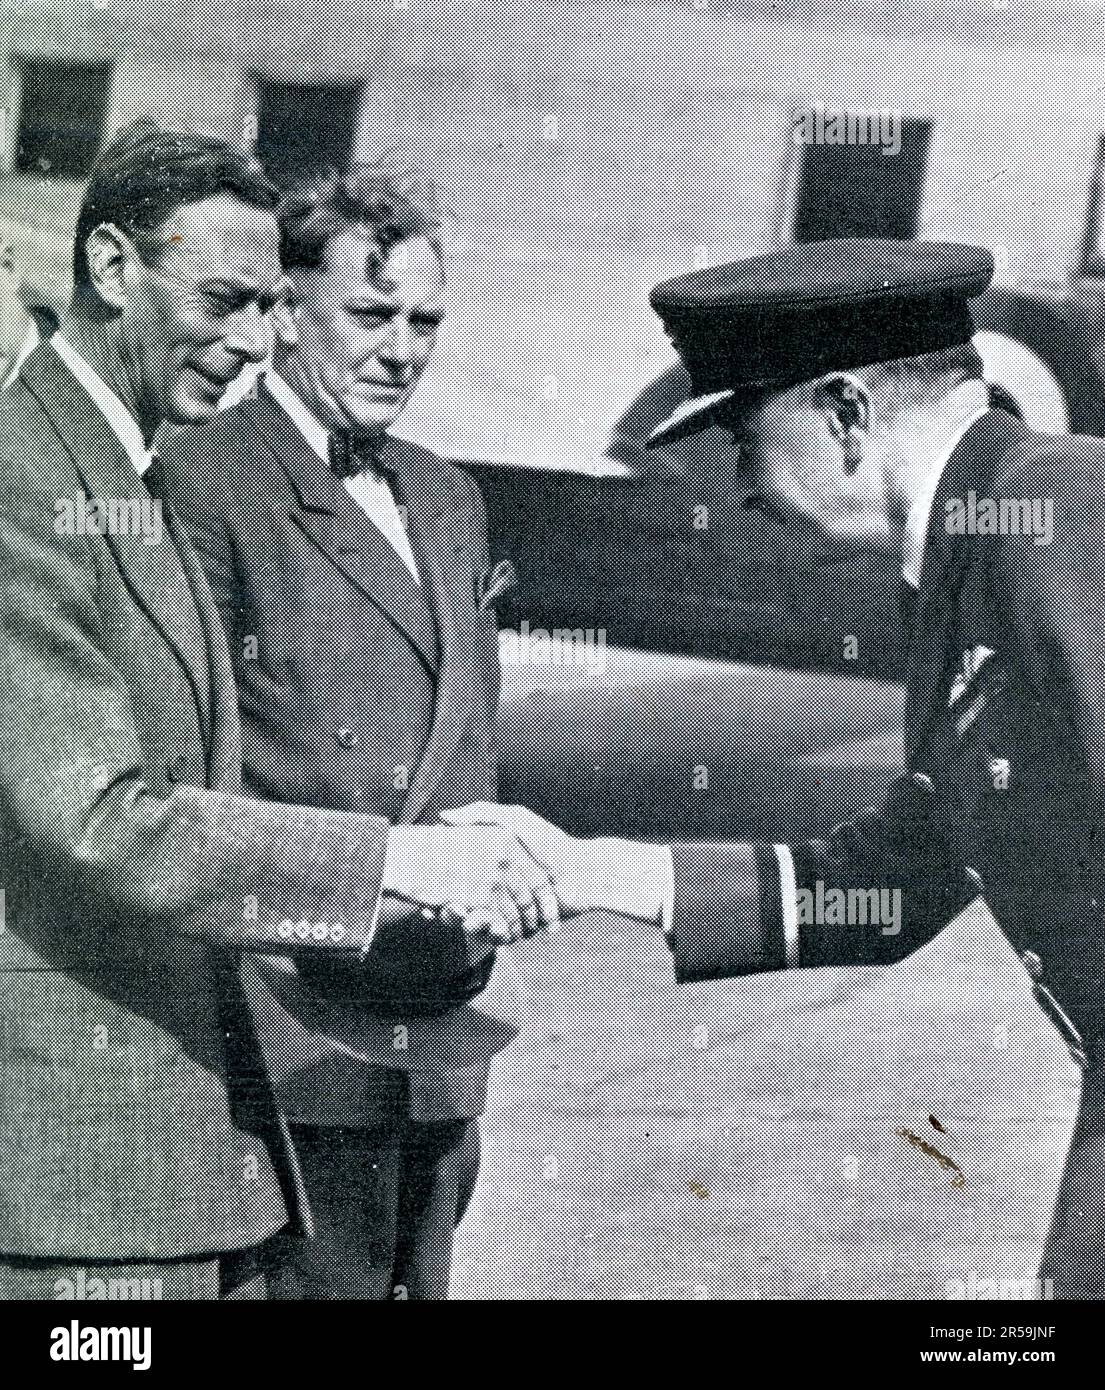 Il 8th settembre 1951 il re Giorgio VI fece una visita di un giorno da Balmoral, dove si trovava in vacanza a Londra per un esame da parte dei medici. Qui è visto all'aeroporto di Londra durante il viaggio di ritorno per unirsi alla famiglia reale in vacanza a Balmoral, Scozia, Regno Unito Questa foto è stata scattata pochi mesi prima della morte precoce del Re nel febbraio 1952, di soli 56 anni. Foto Stock